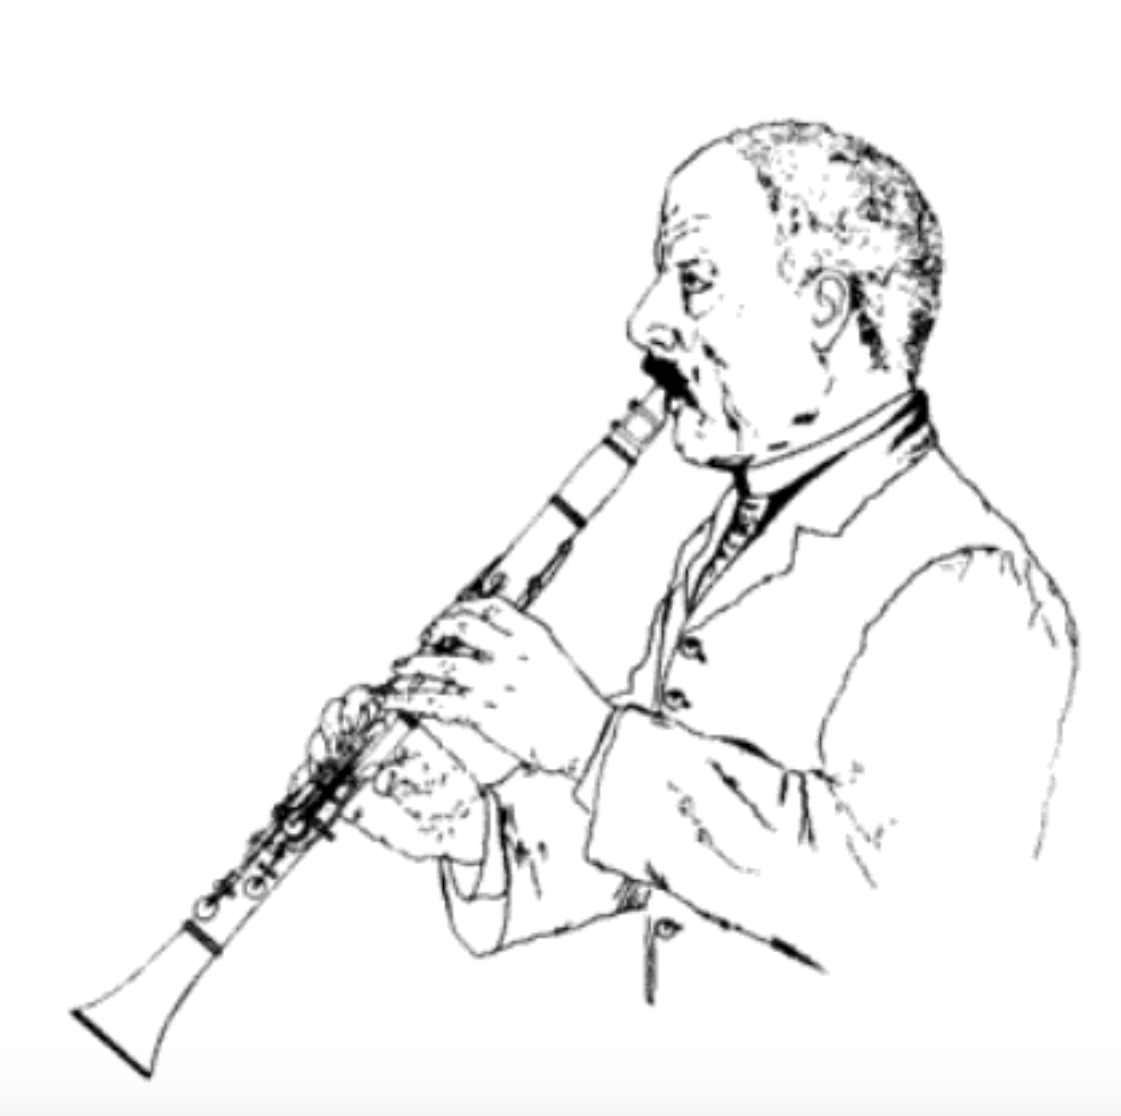 Labanchi (1886) Methodo progressivo per il clarinetto, imboccatura